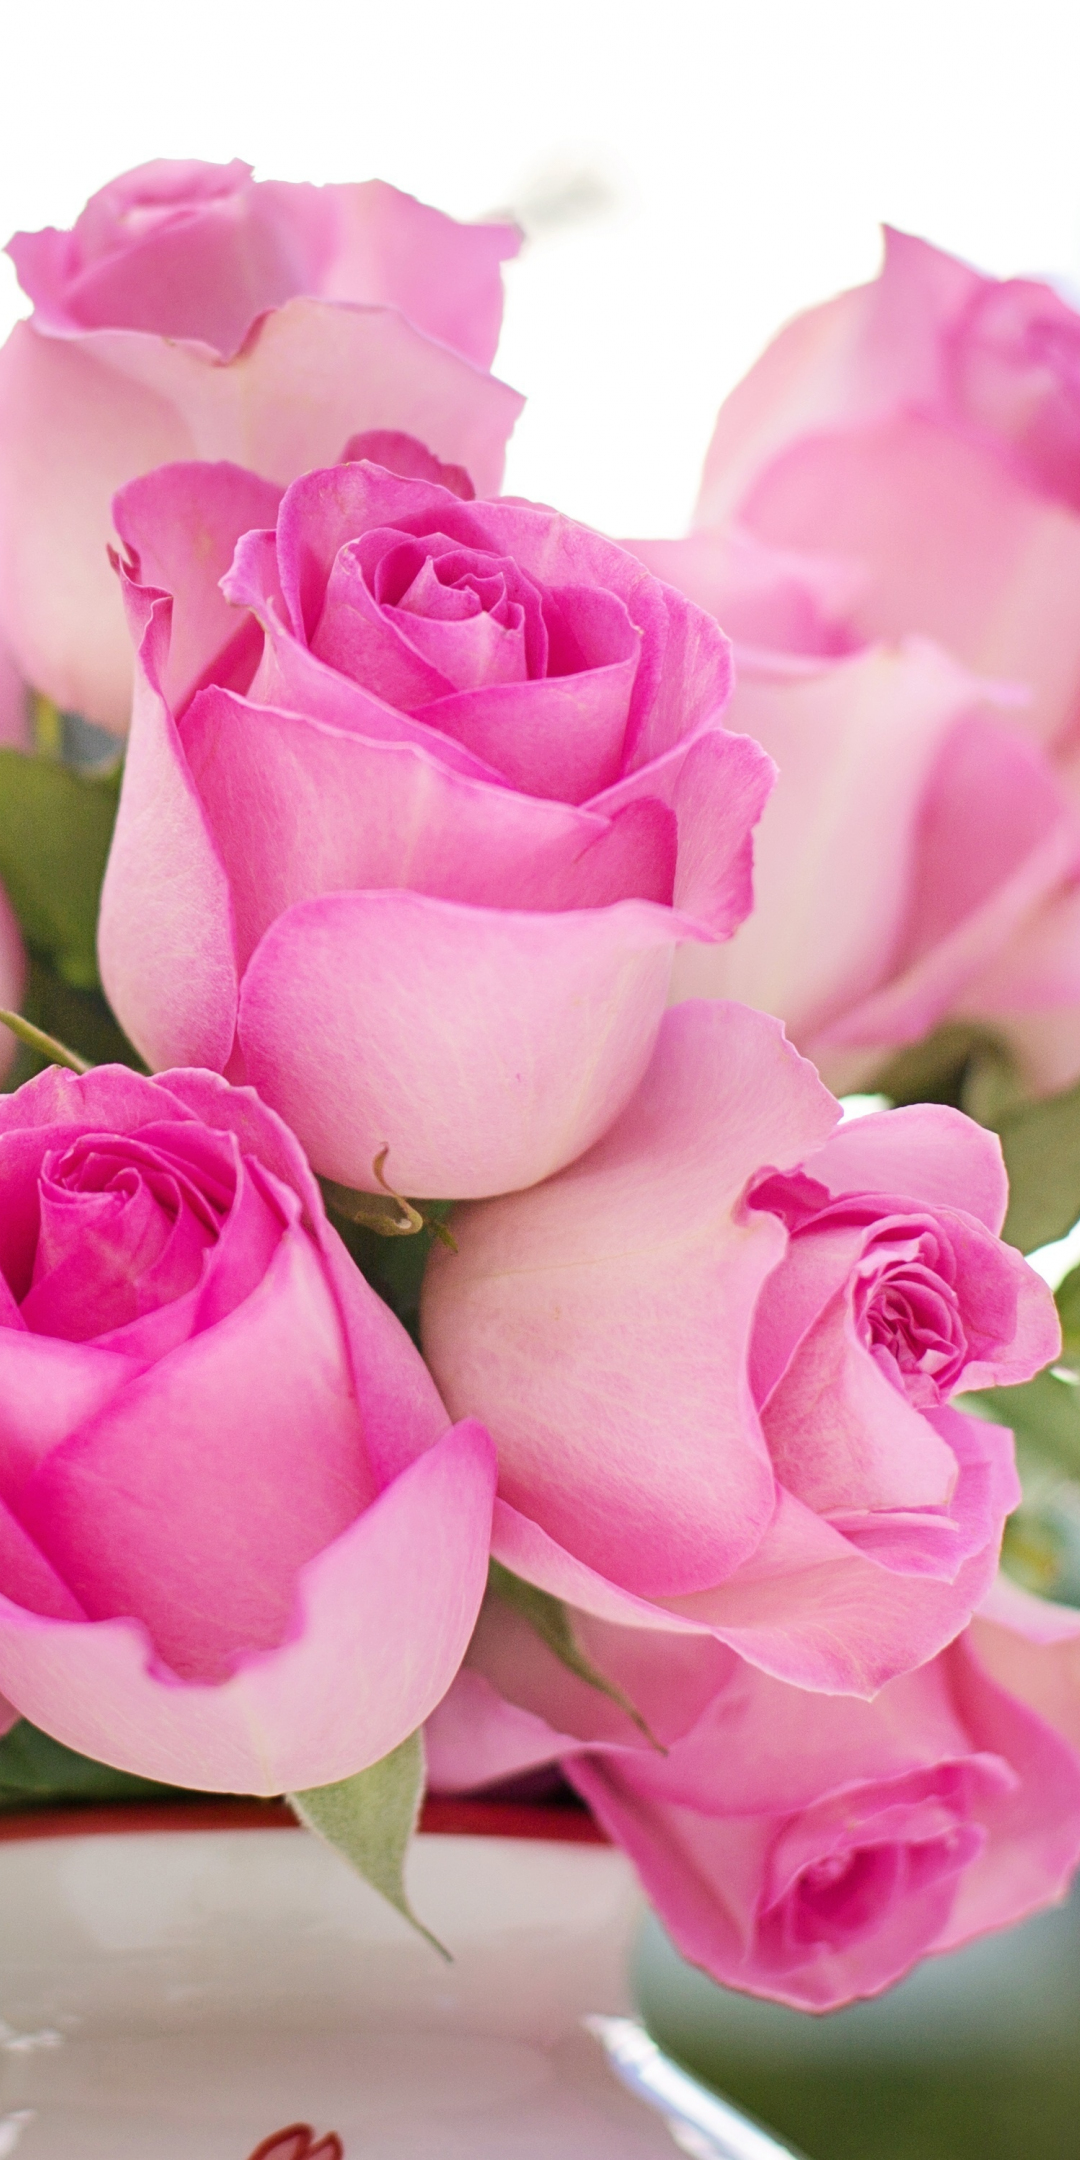 Flower vase, pink roses, fresh, 1080x2160 wallpaper